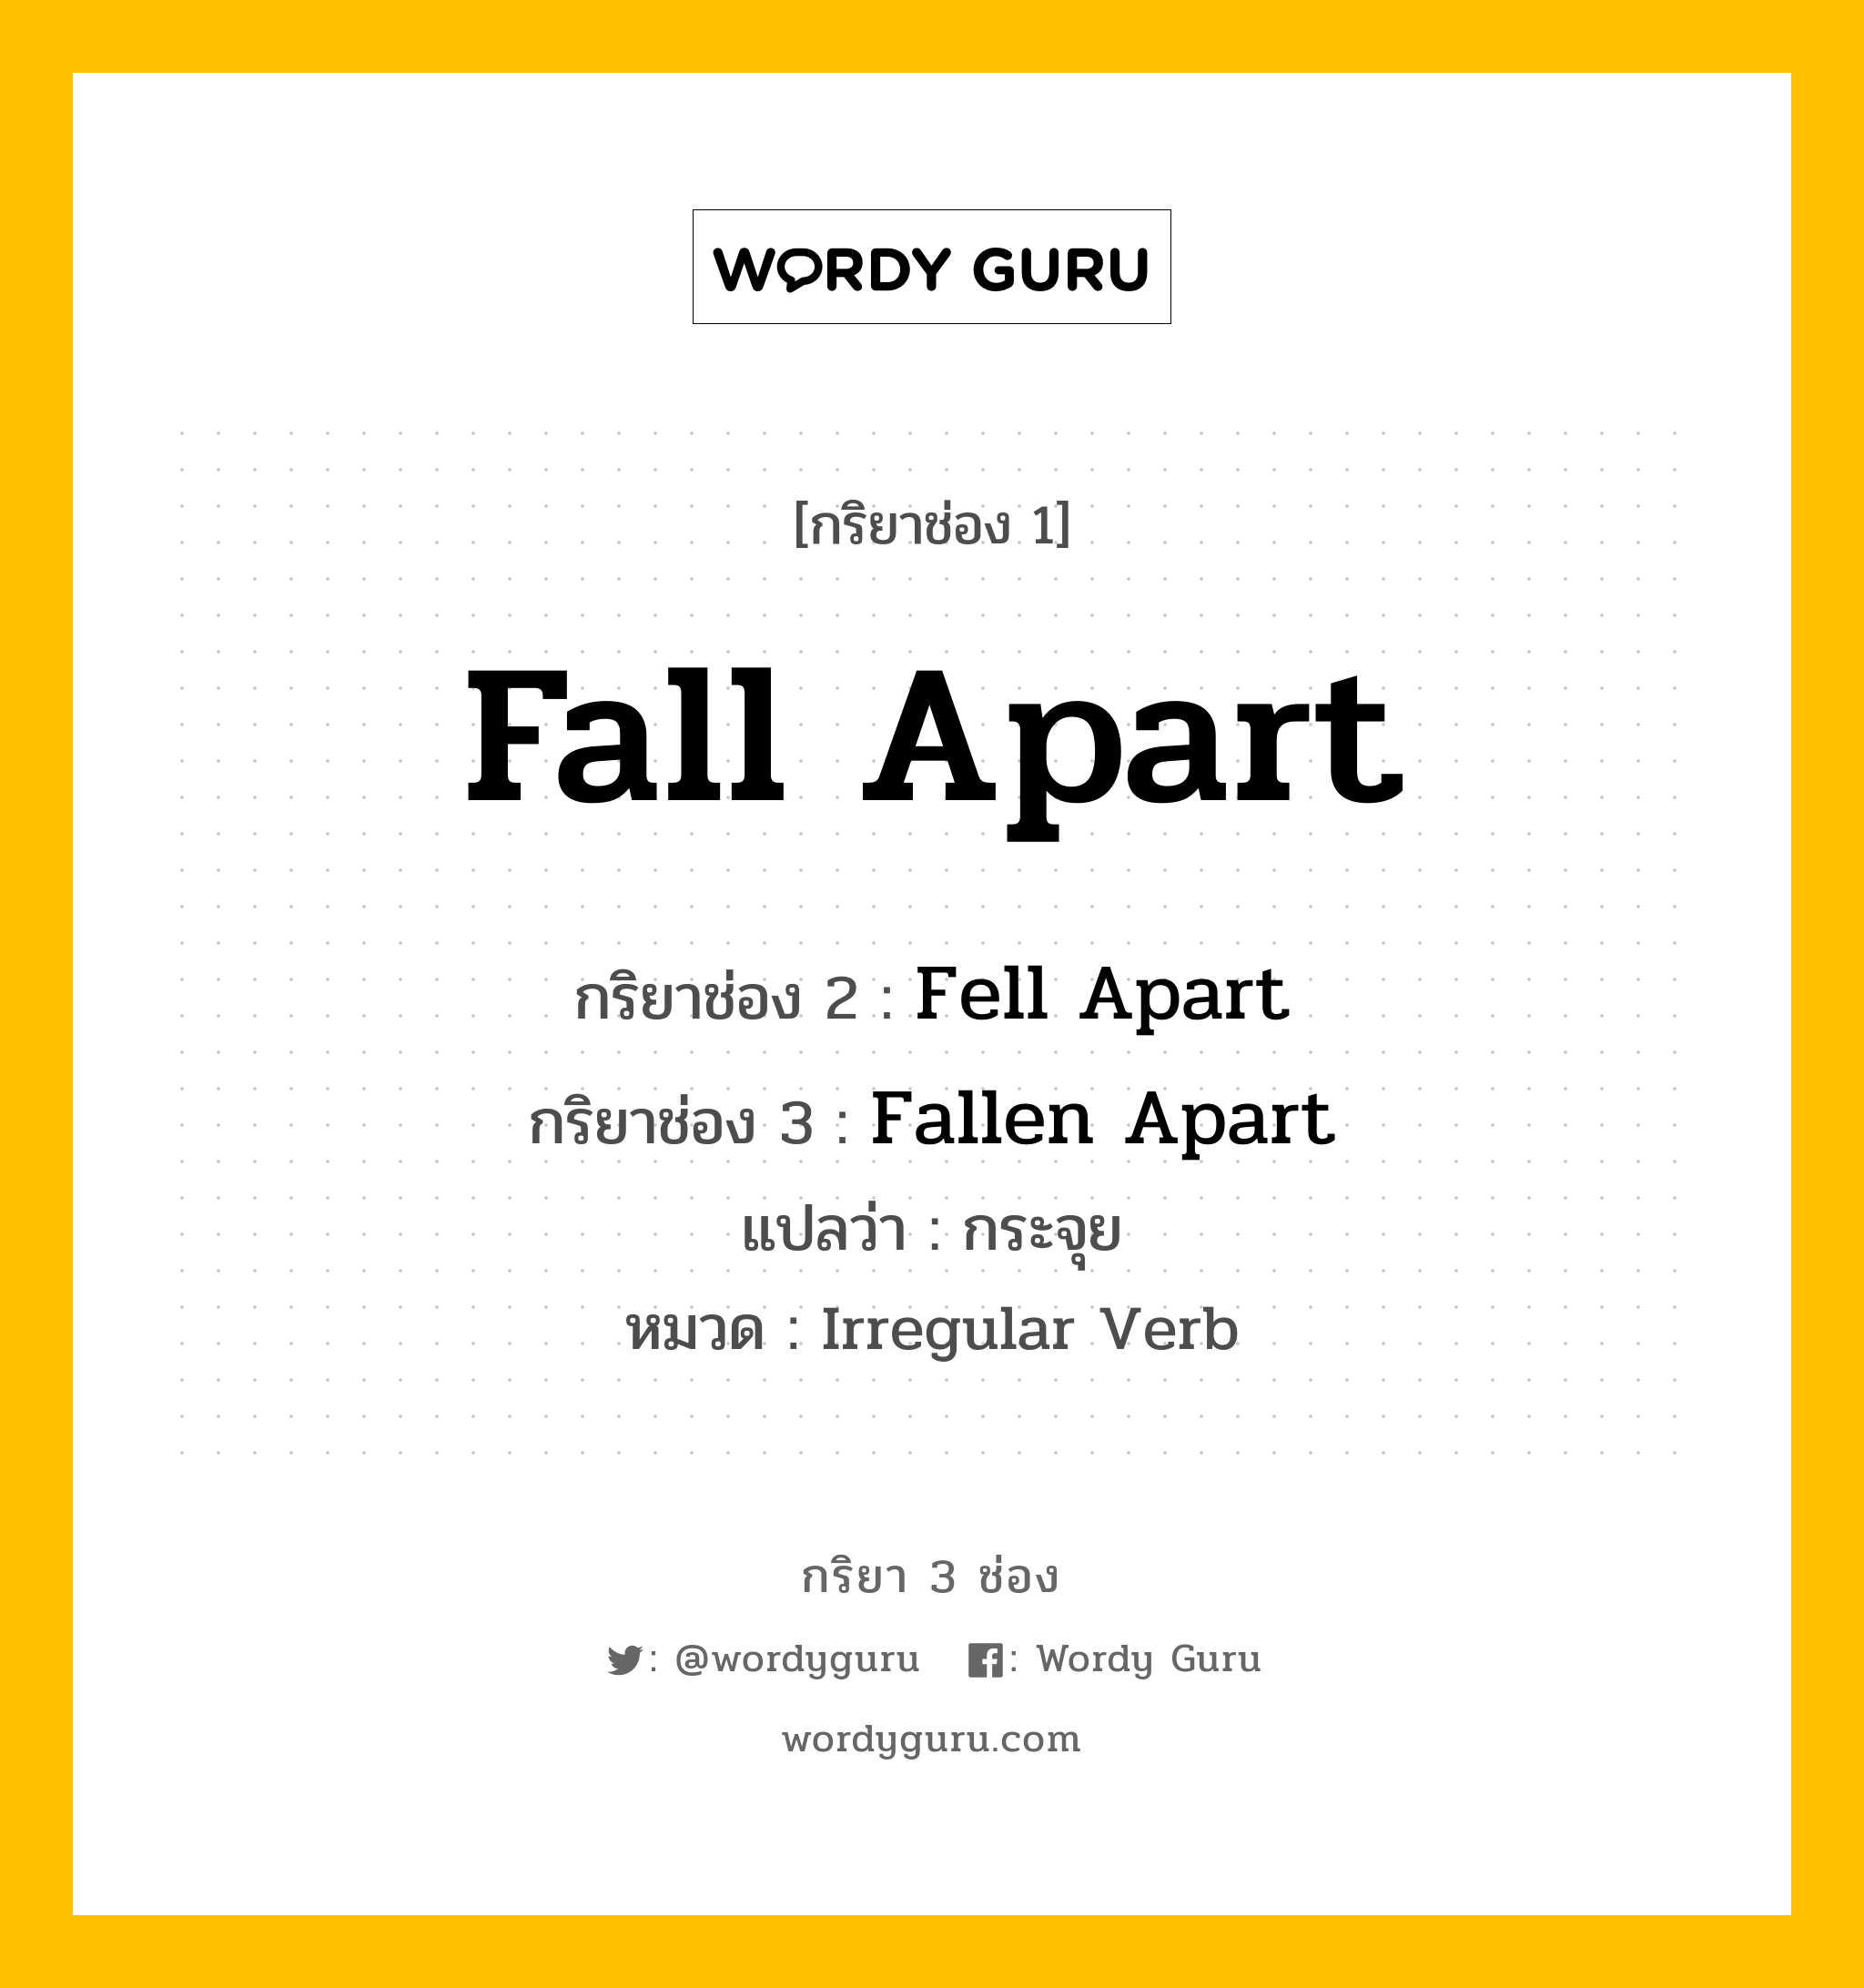 กริยา 3 ช่อง: Fall Apart ช่อง 2 Fall Apart ช่อง 3 คืออะไร, กริยาช่อง 1 Fall Apart กริยาช่อง 2 Fell Apart กริยาช่อง 3 Fallen Apart แปลว่า กระจุย หมวด Irregular Verb หมวด Irregular Verb